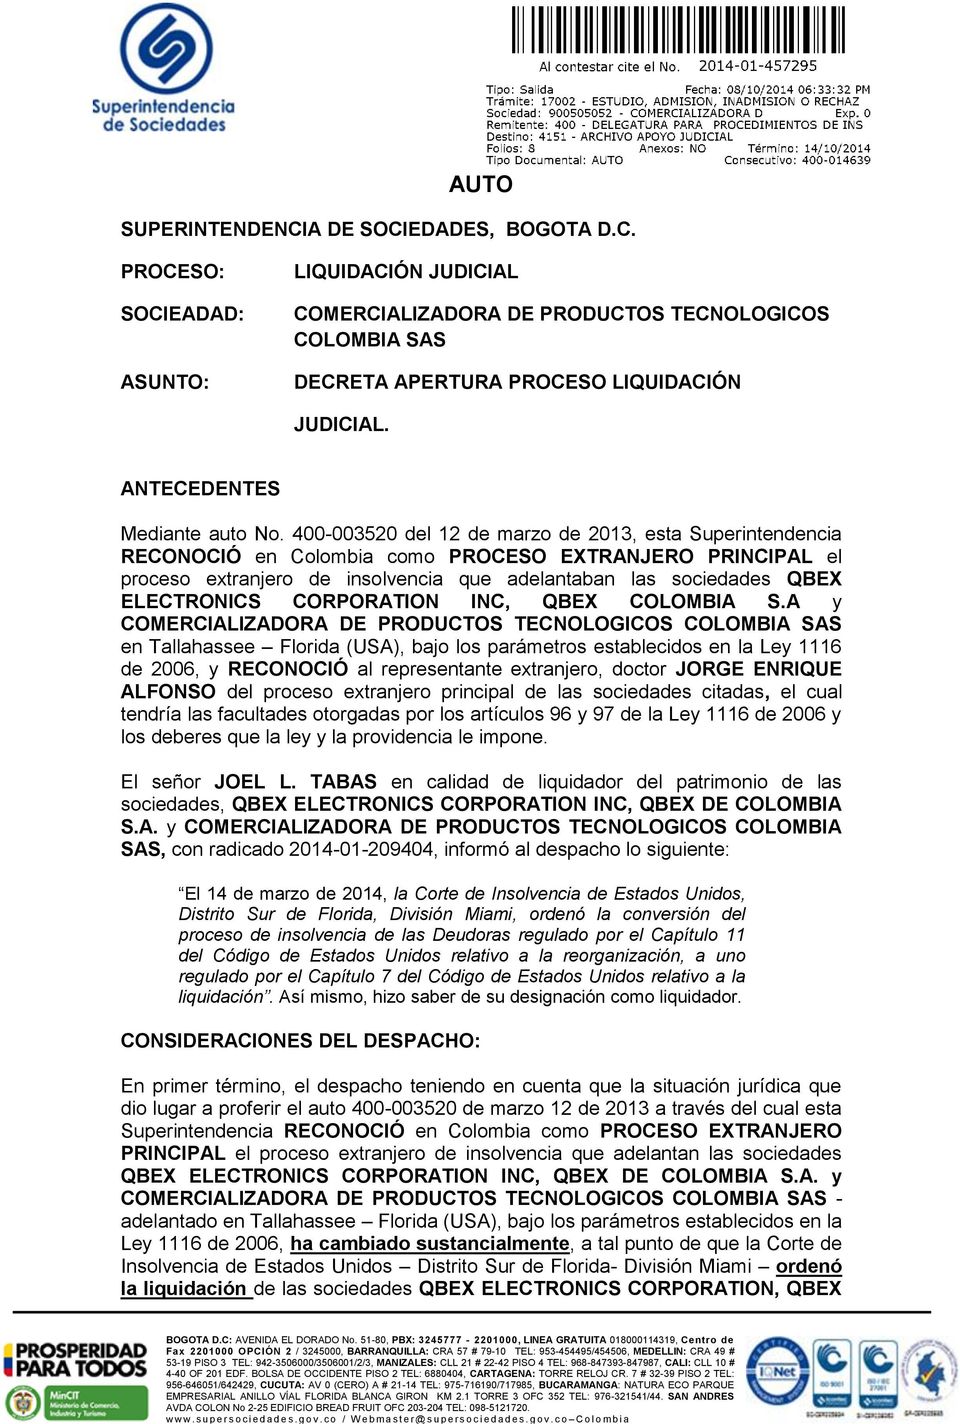 400-003520 del 12 de marzo de 2013, esta Superintendencia RECONOCIÓ en Colombia como PROCESO EXTRANJERO PRINCIPAL el proceso extranjero de insolvencia que adelantaban las sociedades QBEX ELECTRONICS